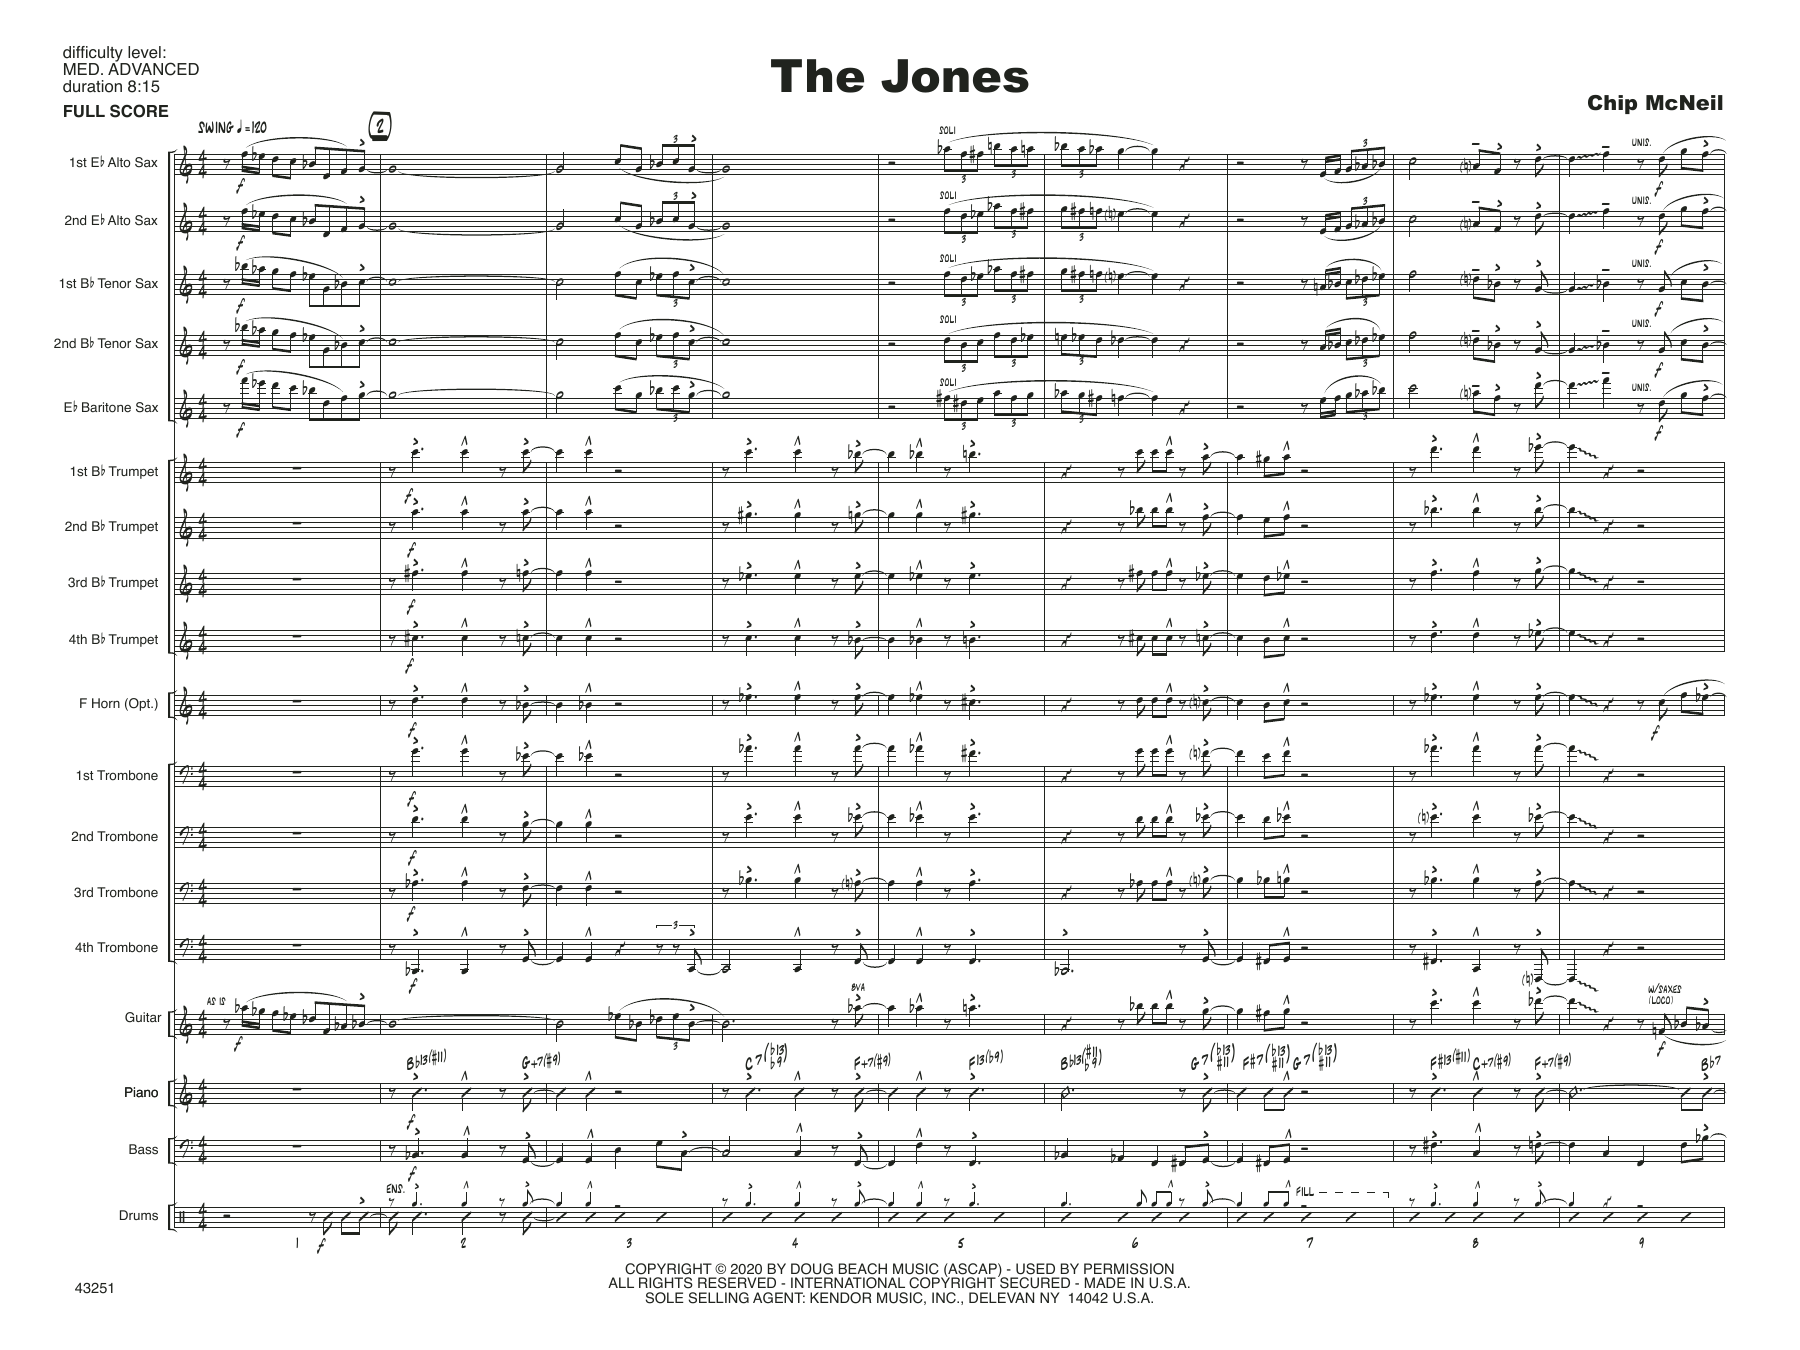 Download Chip McNeill The Jones - Full Score Sheet Music